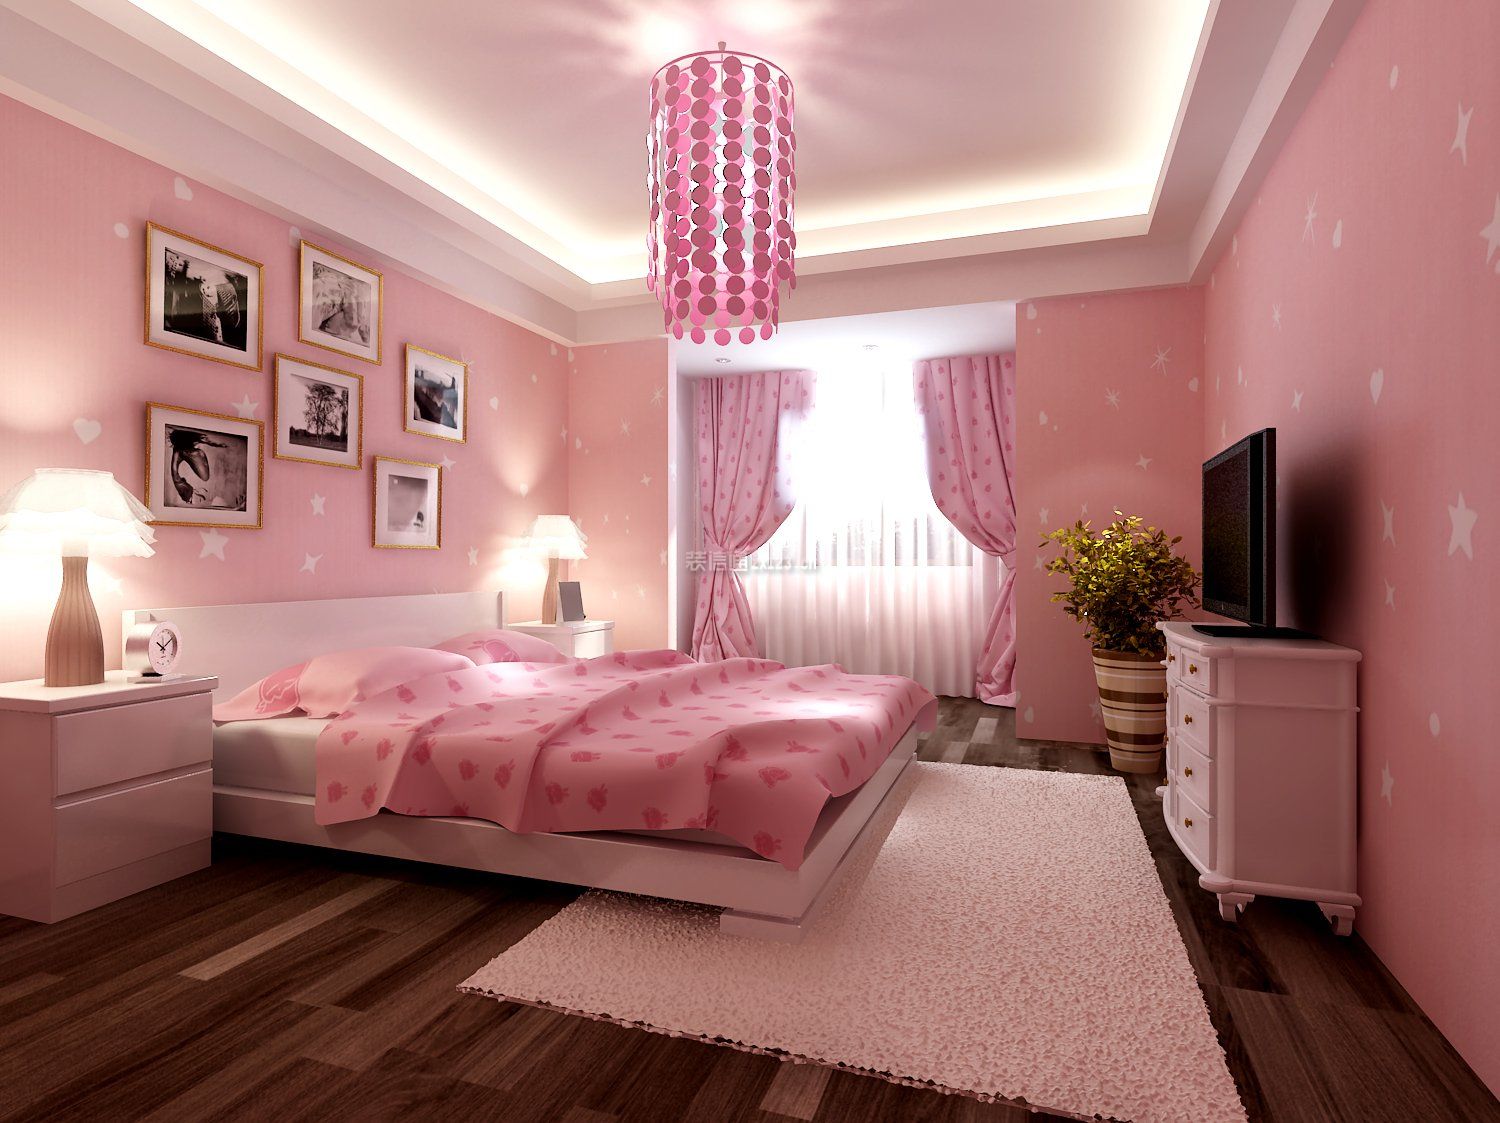 粉色装修卧室效果图图片